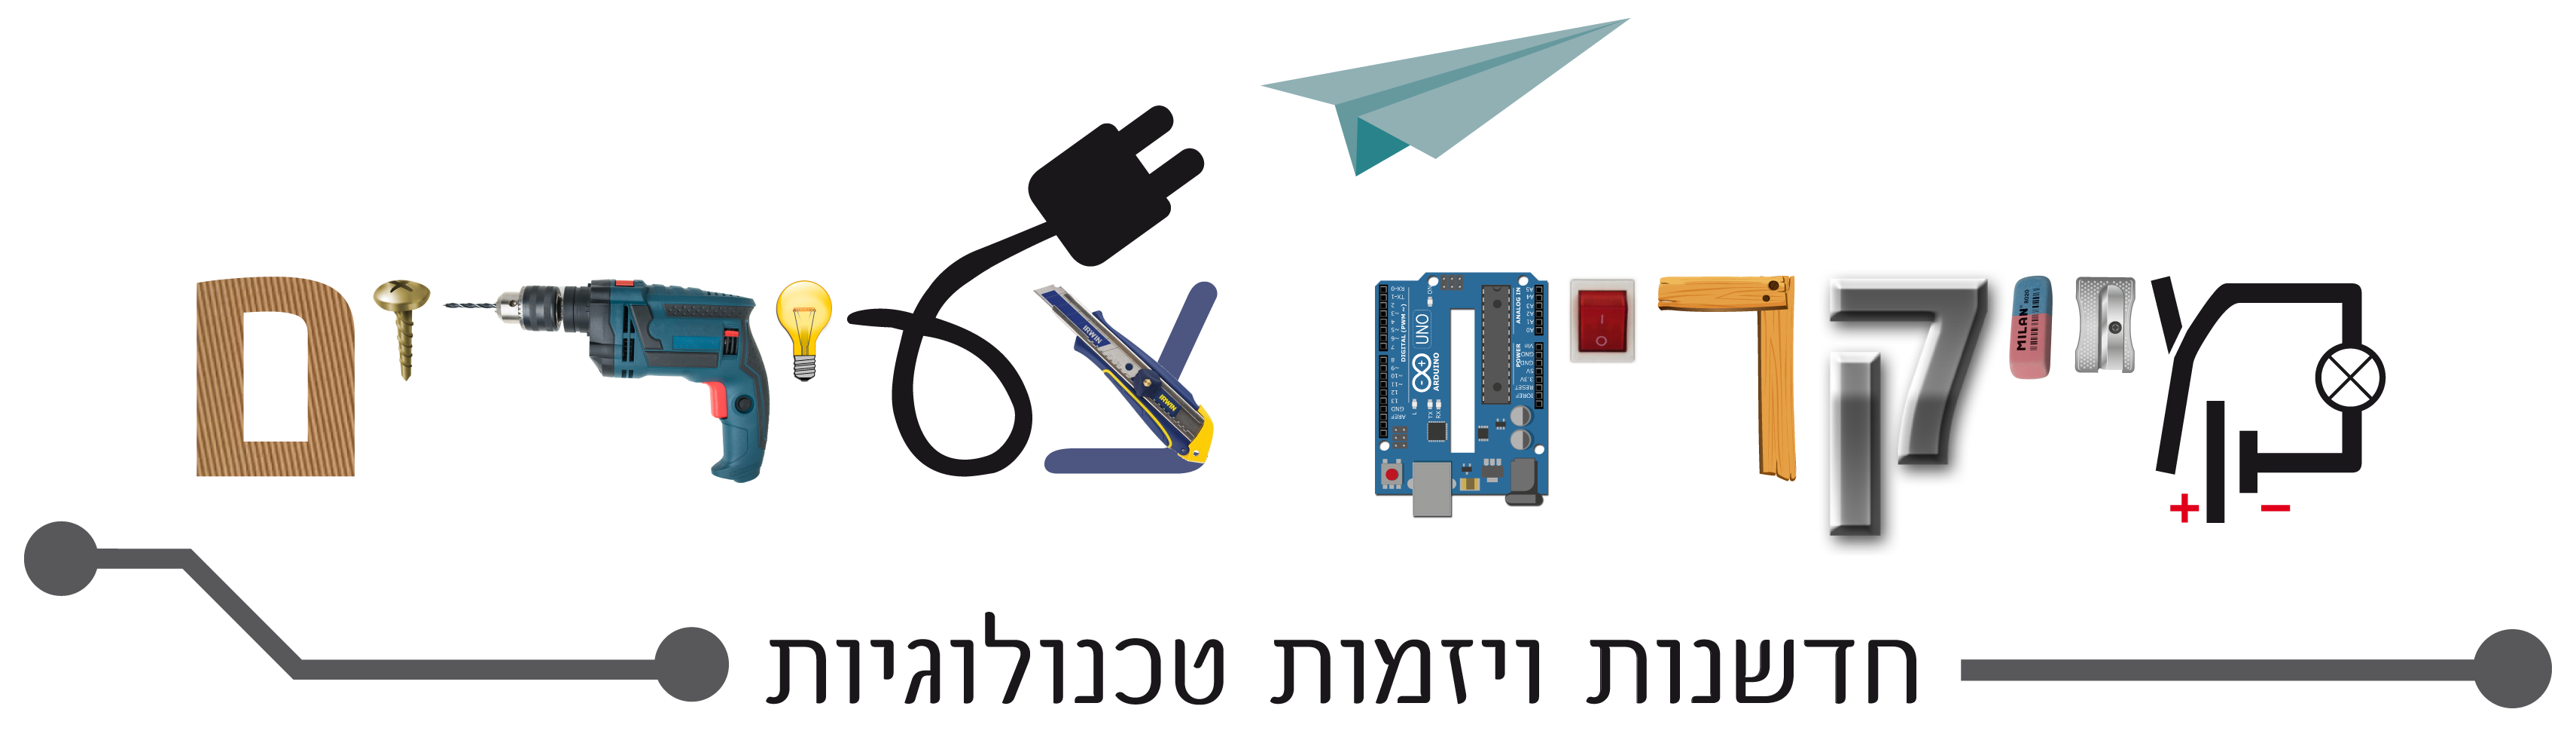 לוגו מייקרים צעירים-עברית טקסט ללא רקע